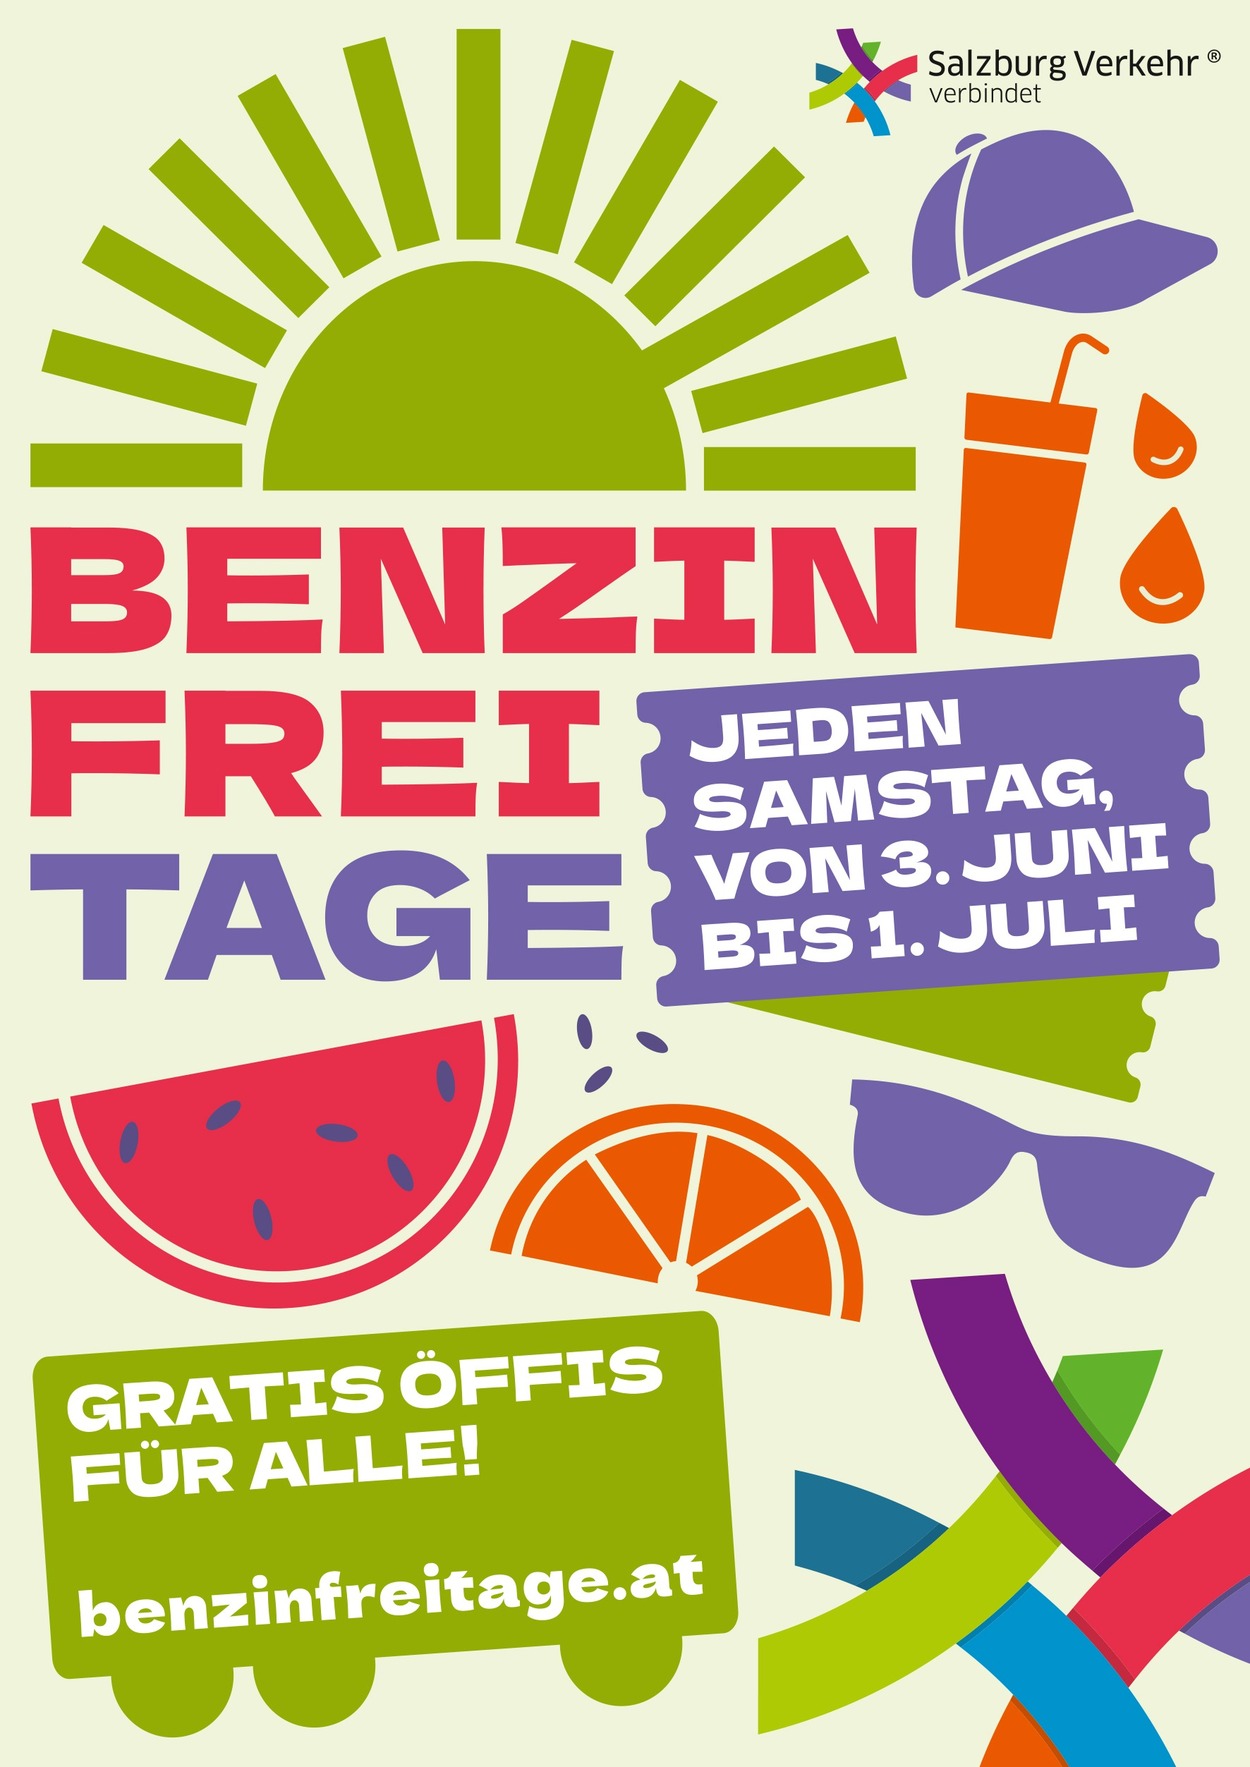 Samstage sind Benzinfrei-Tage: Gratis-Öffis in Salzburg ab 3. Juni